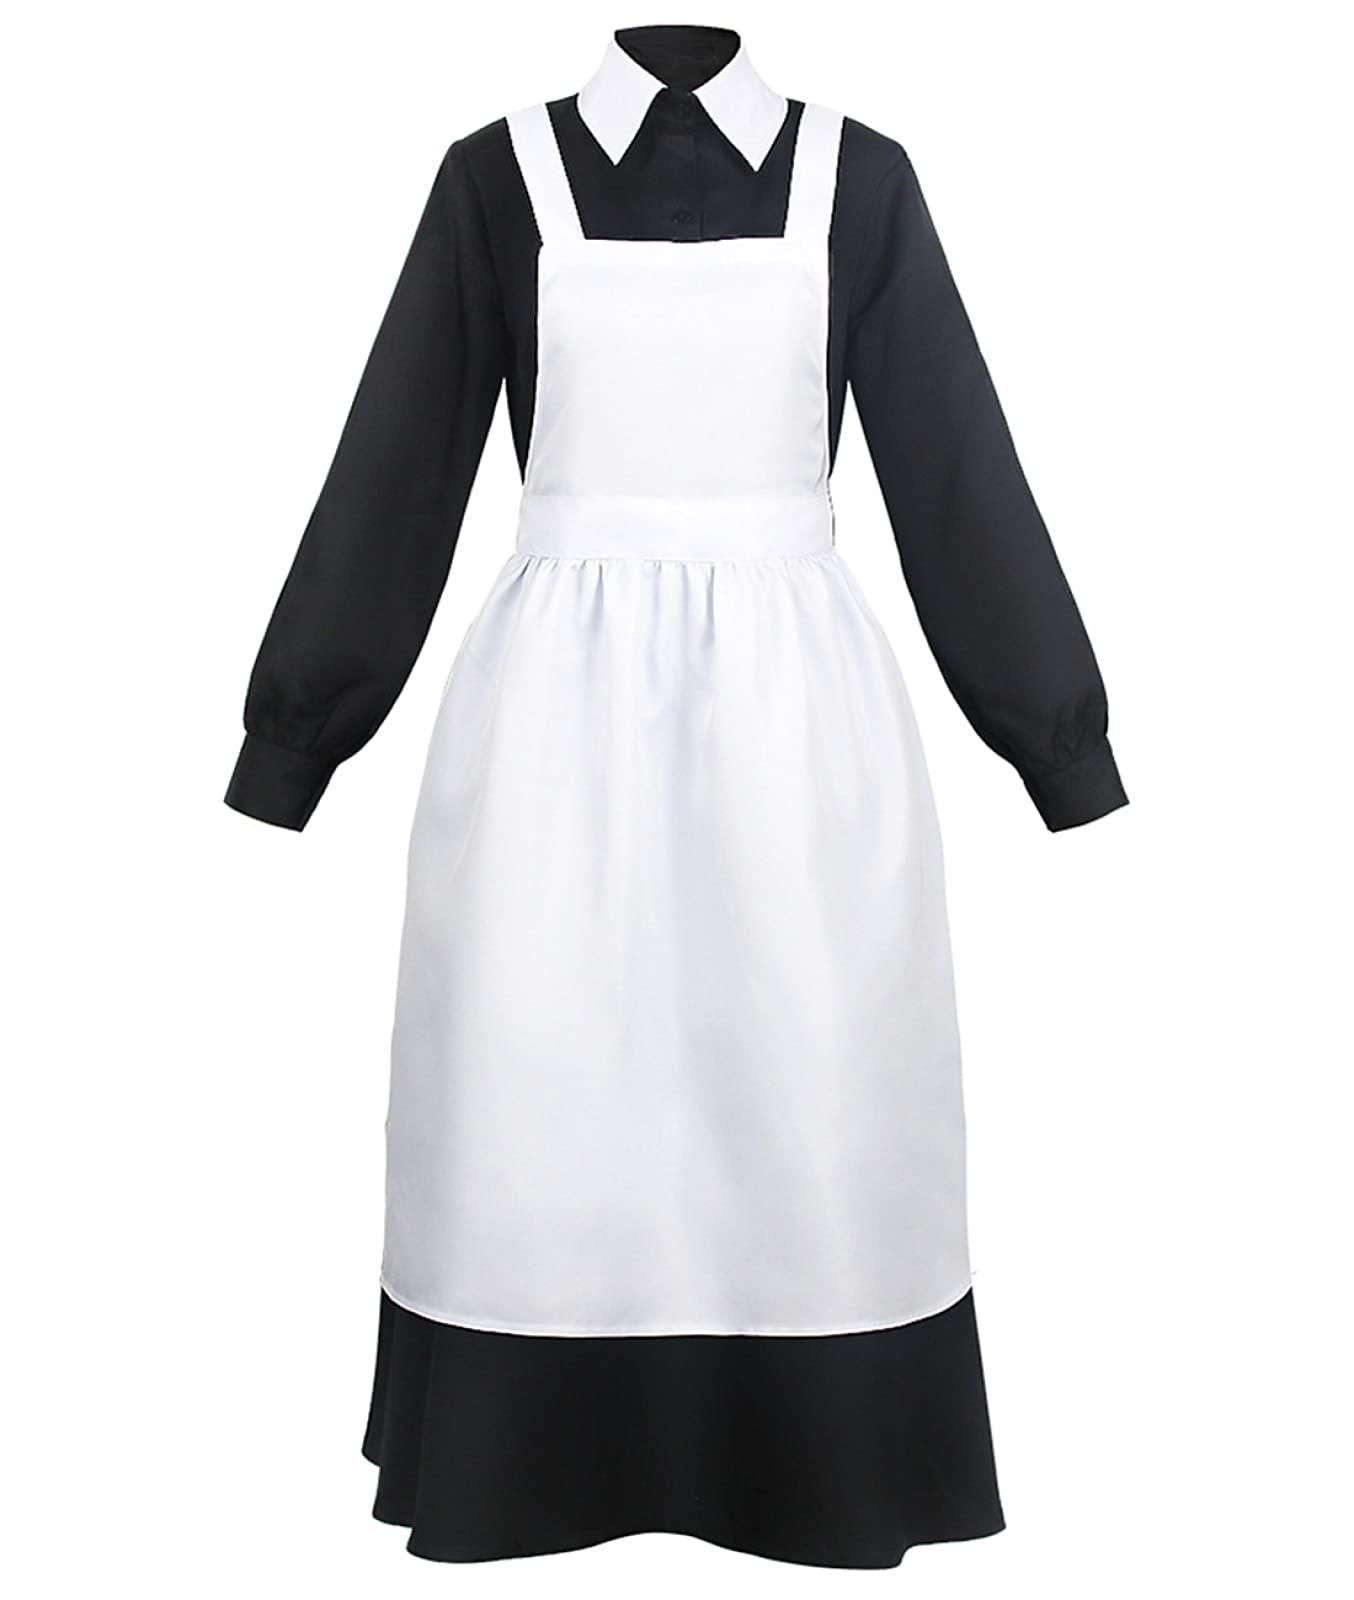 Anime The Promised Neverland Cosplay Mom Isabella Outfits, schwarzes Dienstmädchen-Kleid für Anime-Fans, Cosplay, schwarz, 3XL